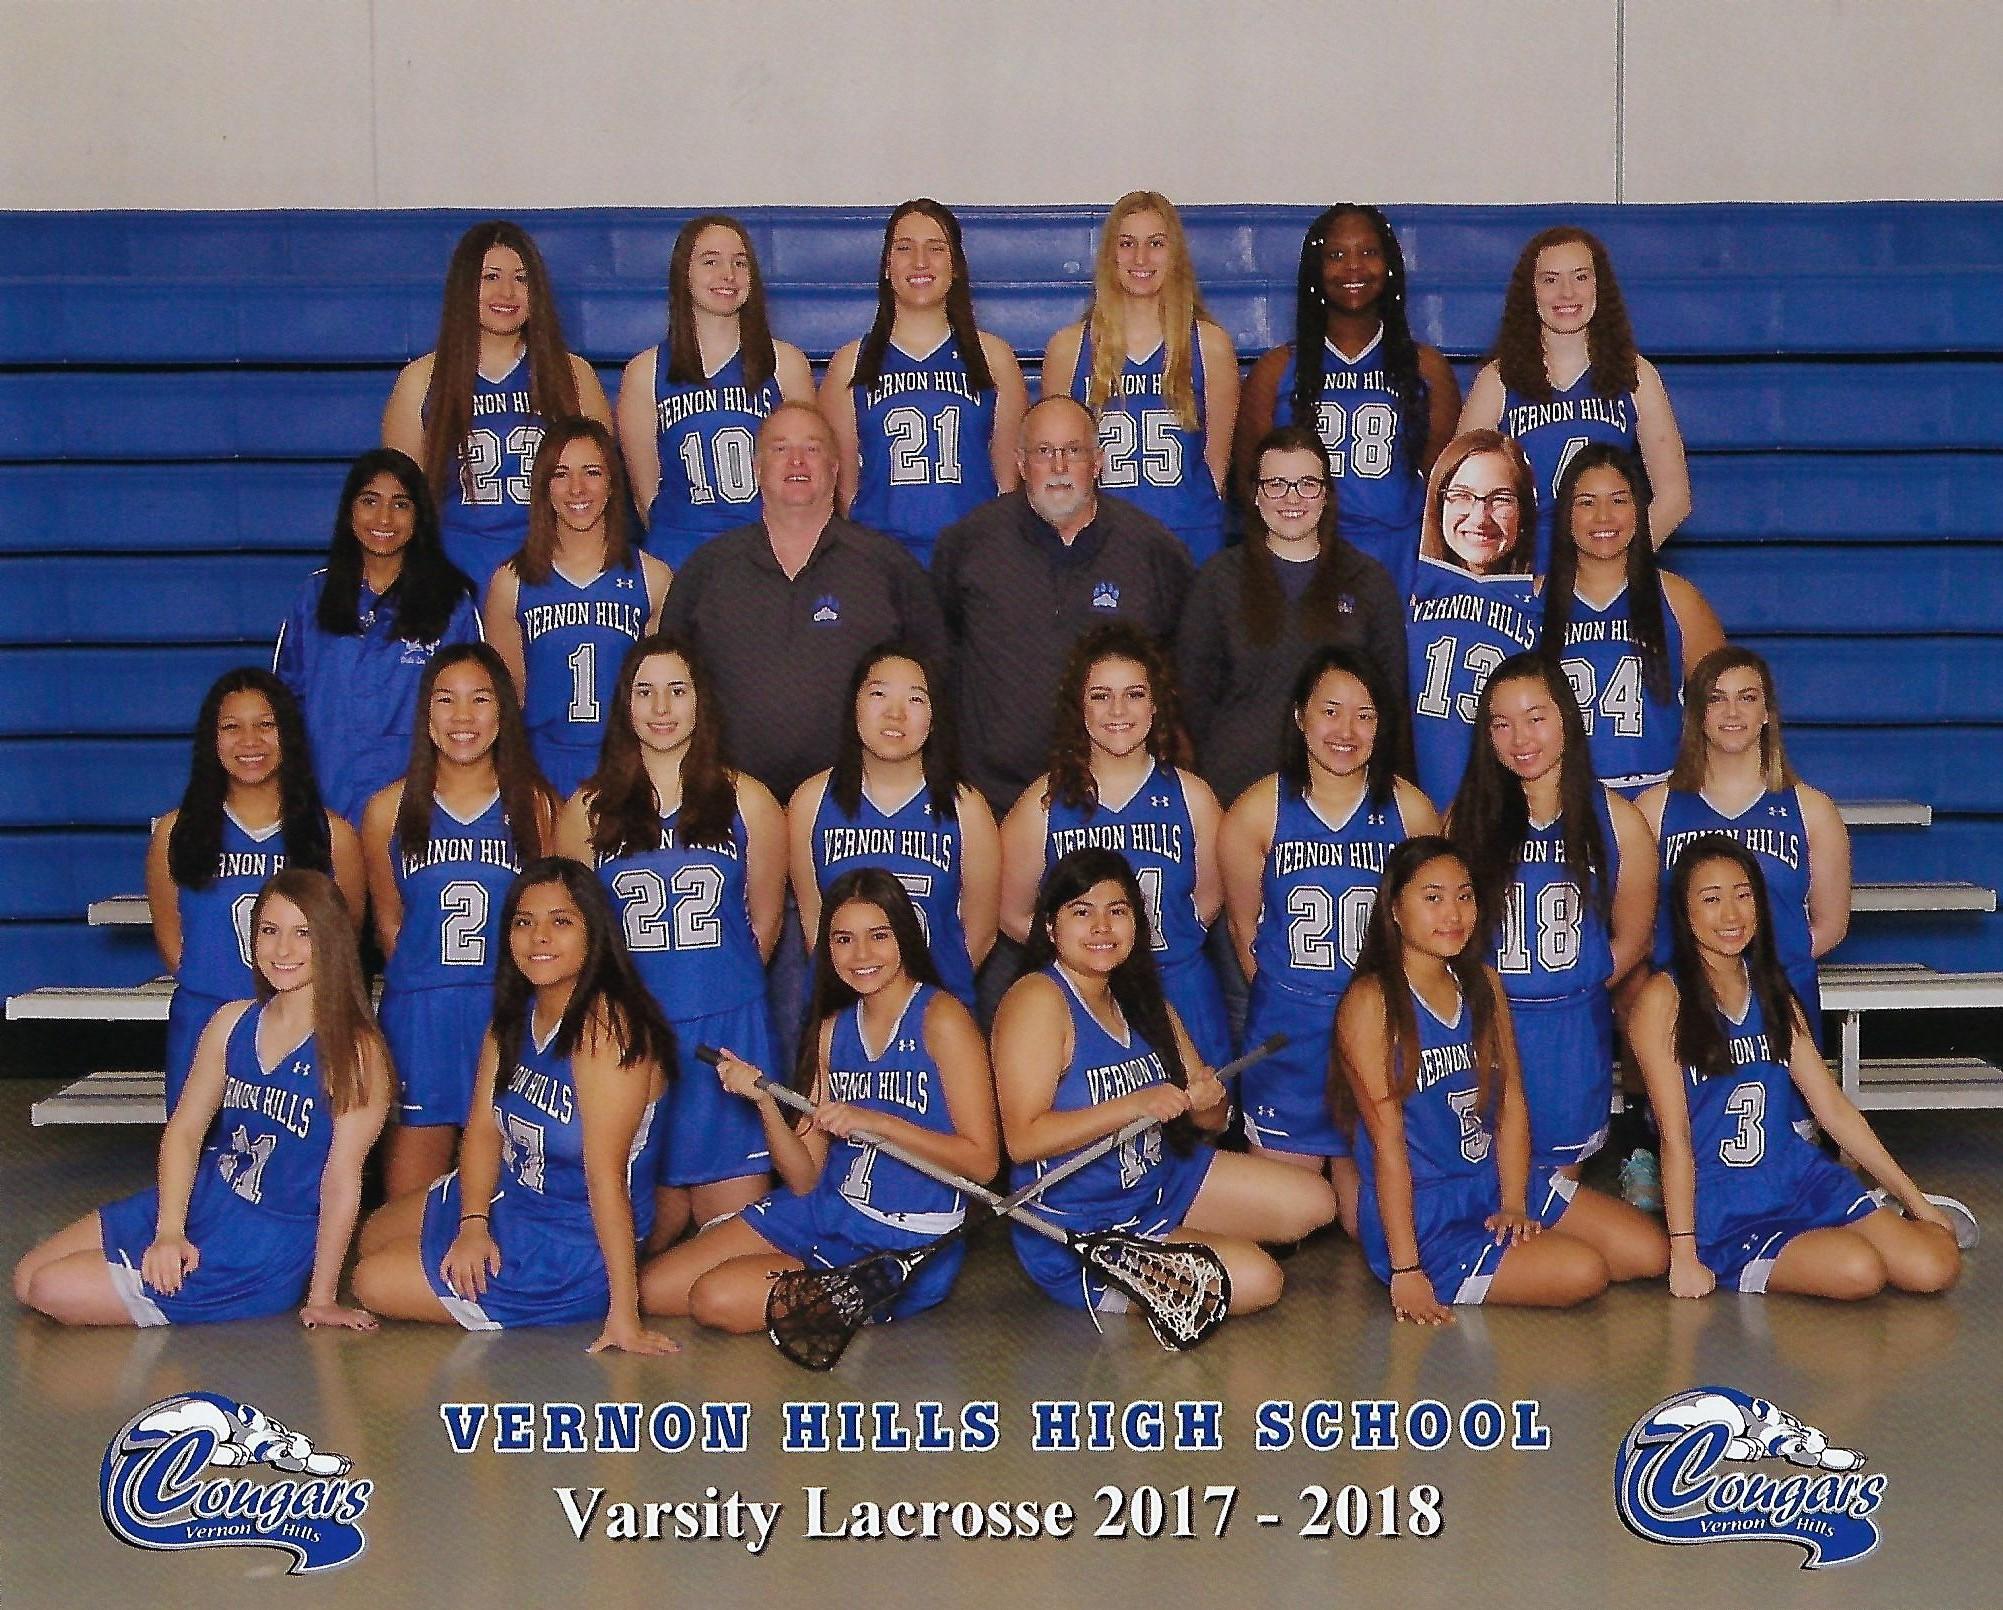 2018 VHHS Girls Lacrosse Varsity